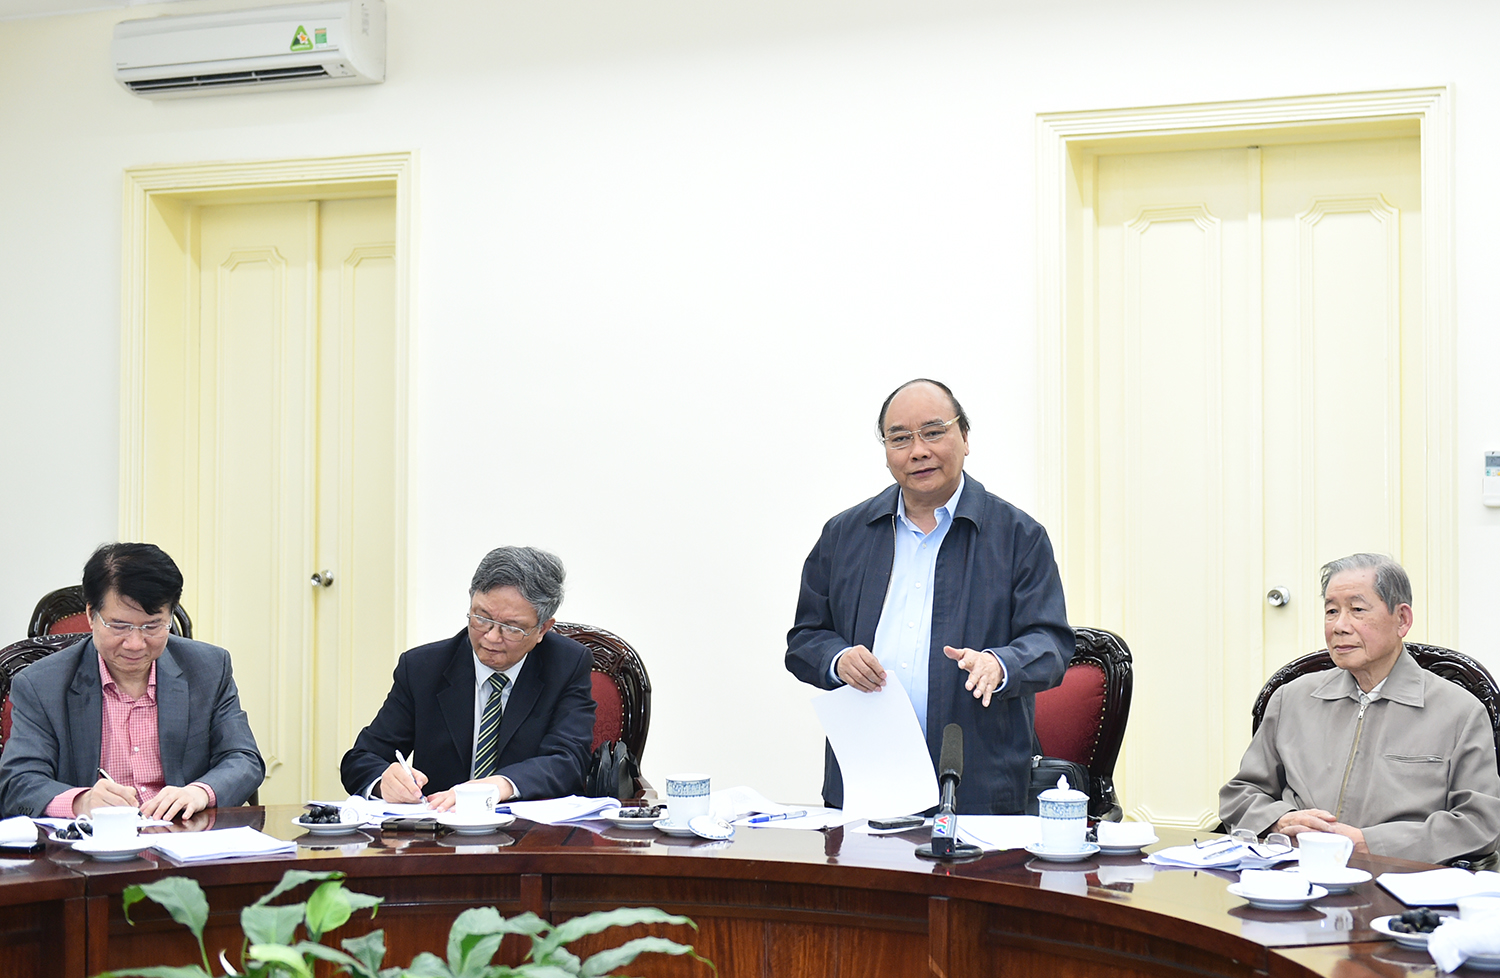  Thủ tướng Chính phủ Nguyễn Xuân Phúc làm việc với các bộ, ngành liên quan và Hiệp hội Dược liệu Việt Nam (Vimames). Ảnh: VGP